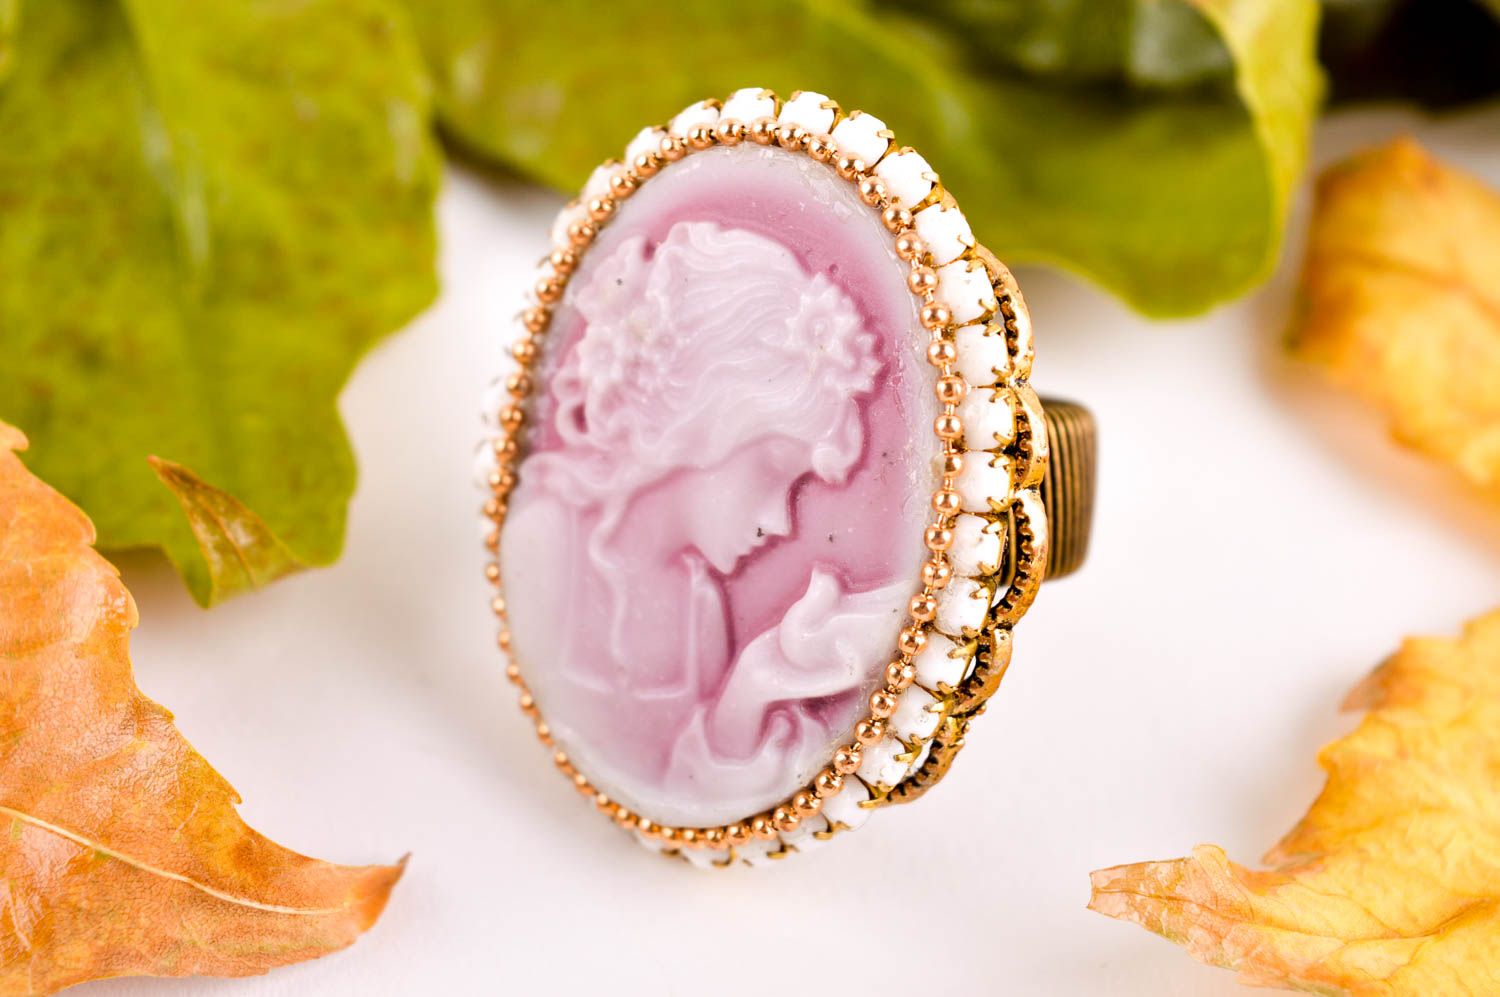 Кольцо камея ручной работы красивое кольцо женское кольцо овальное симпатичное фото 1